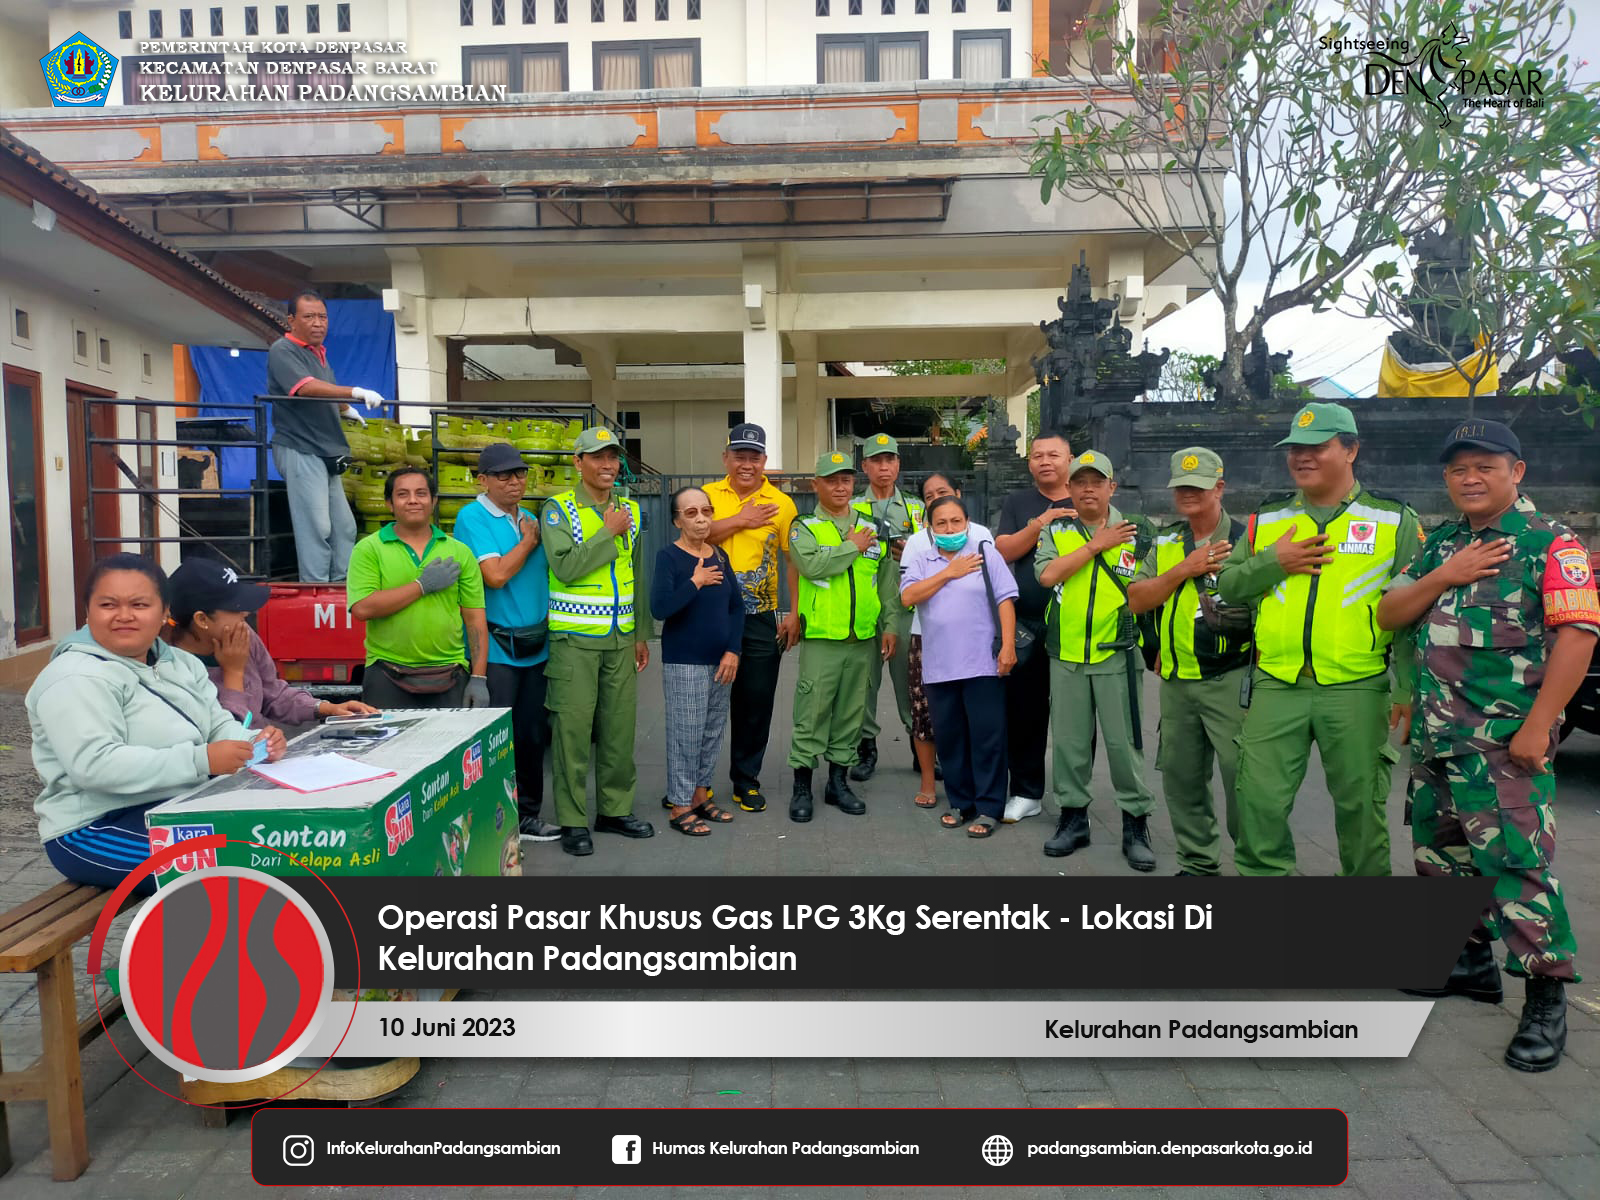 Operasi Pasar Khusus Gas LPG 3Kg Kembali Diadakan di 2 Lokasi Pada Kelurahan Padangsambian